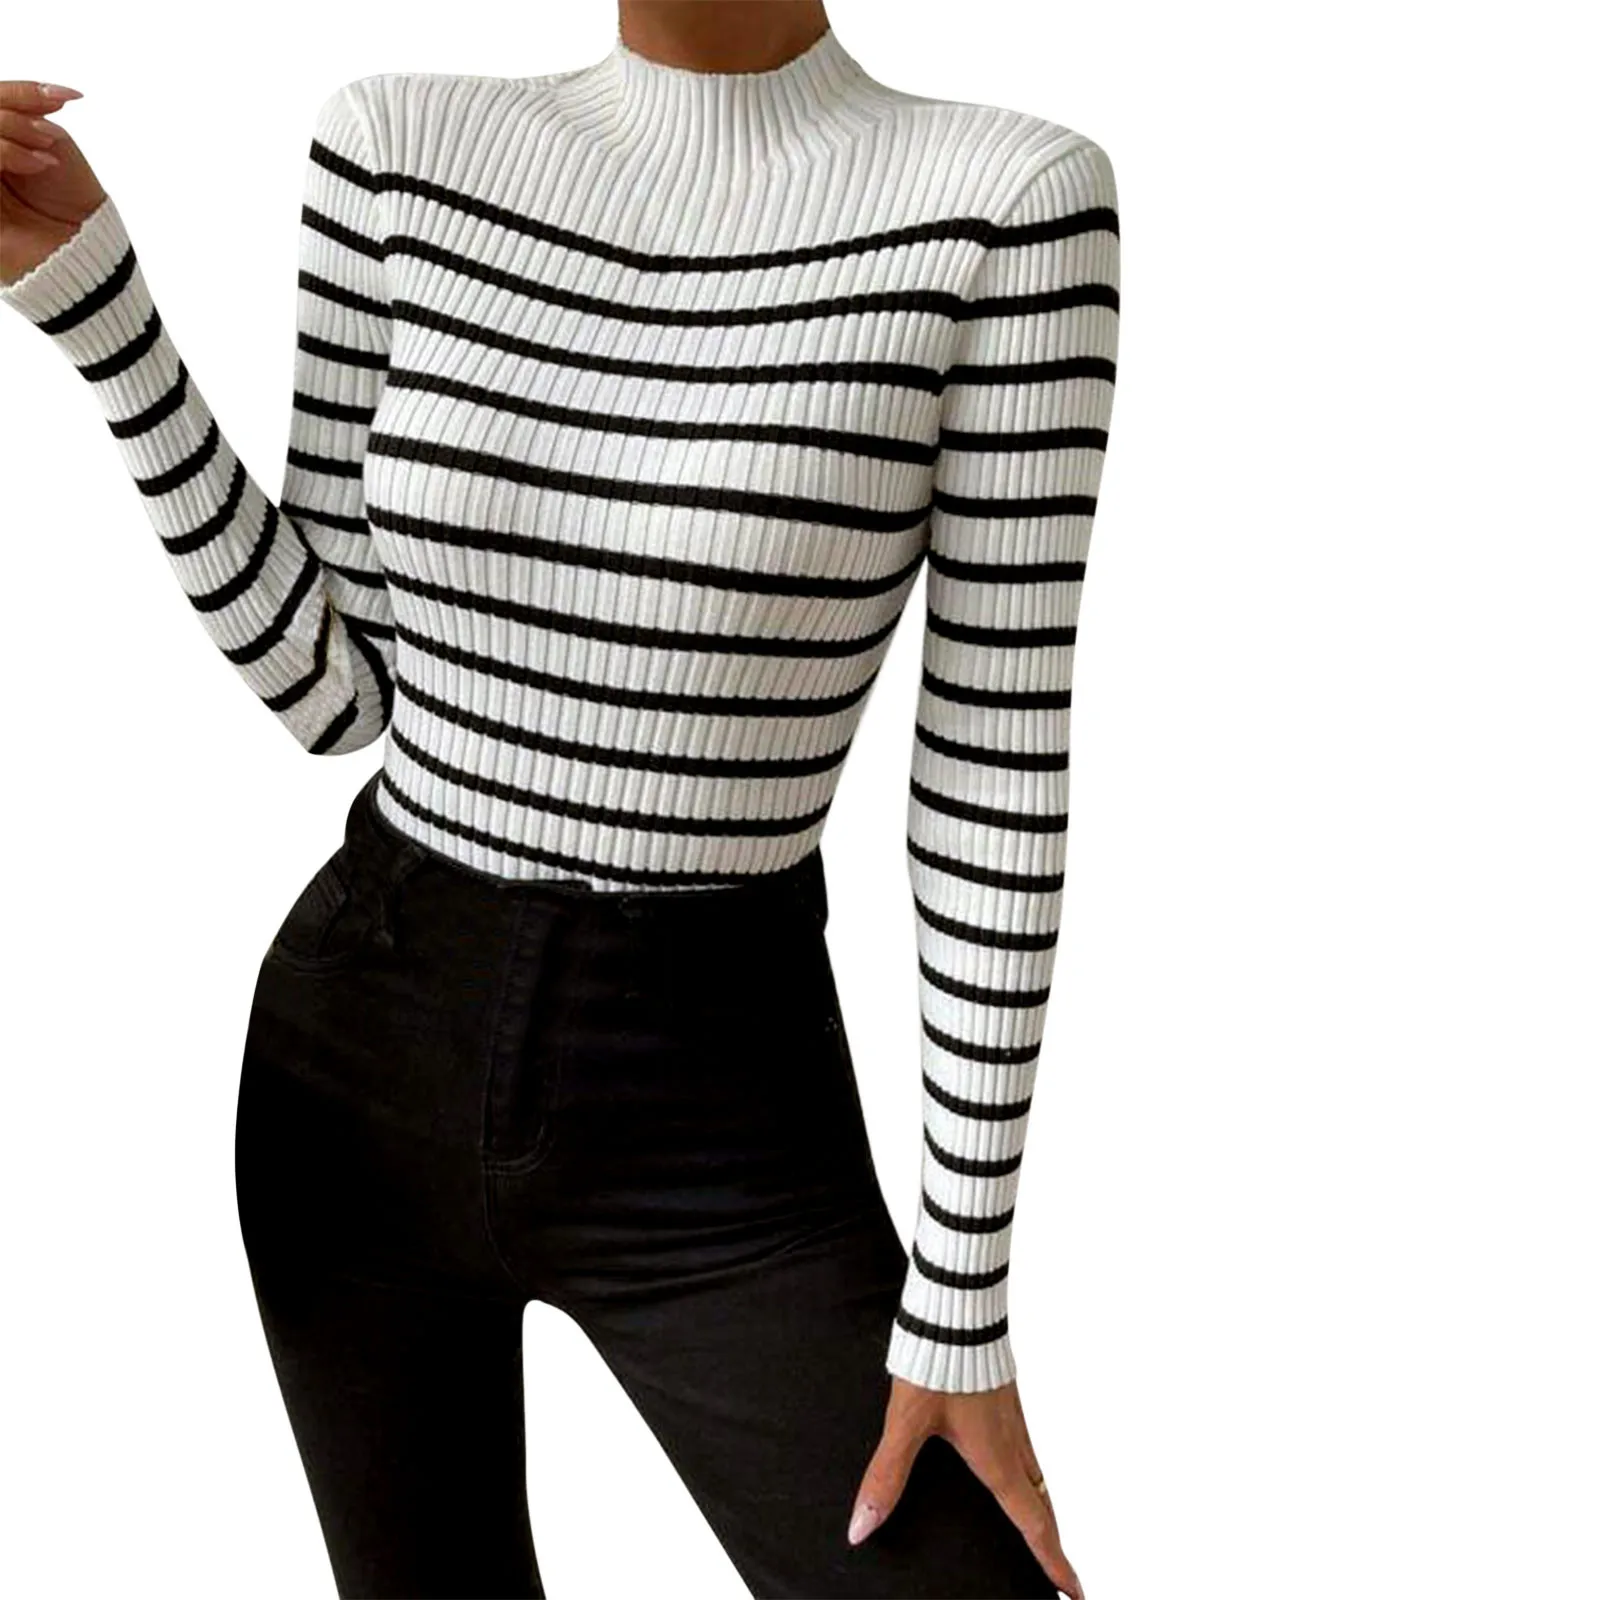 Women's Sweater Long Sleeve Striped Turtleneck 2